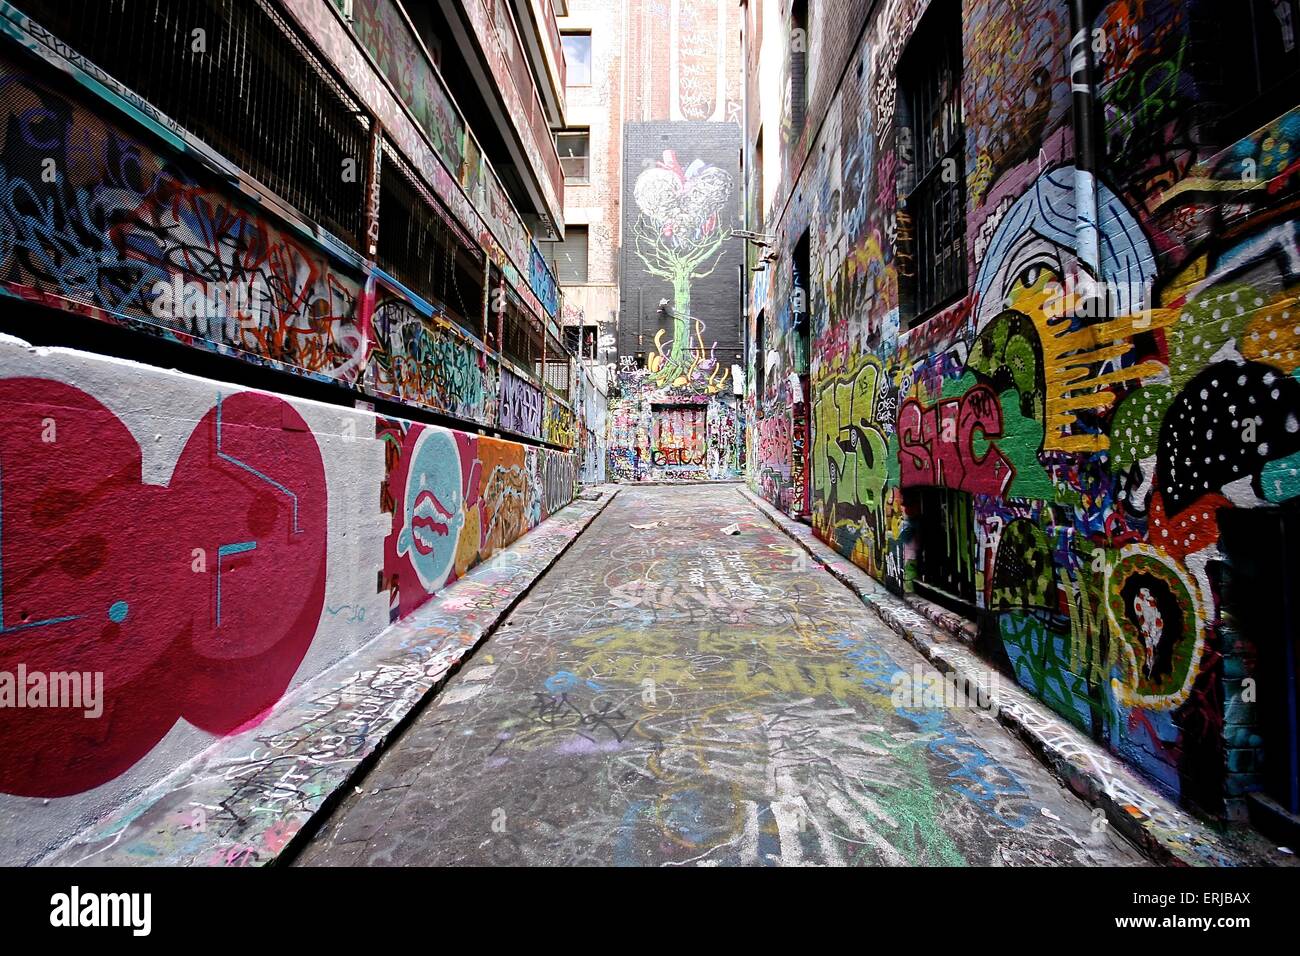 Graffiti-Bahnen, Melbourne Australien Stockfoto